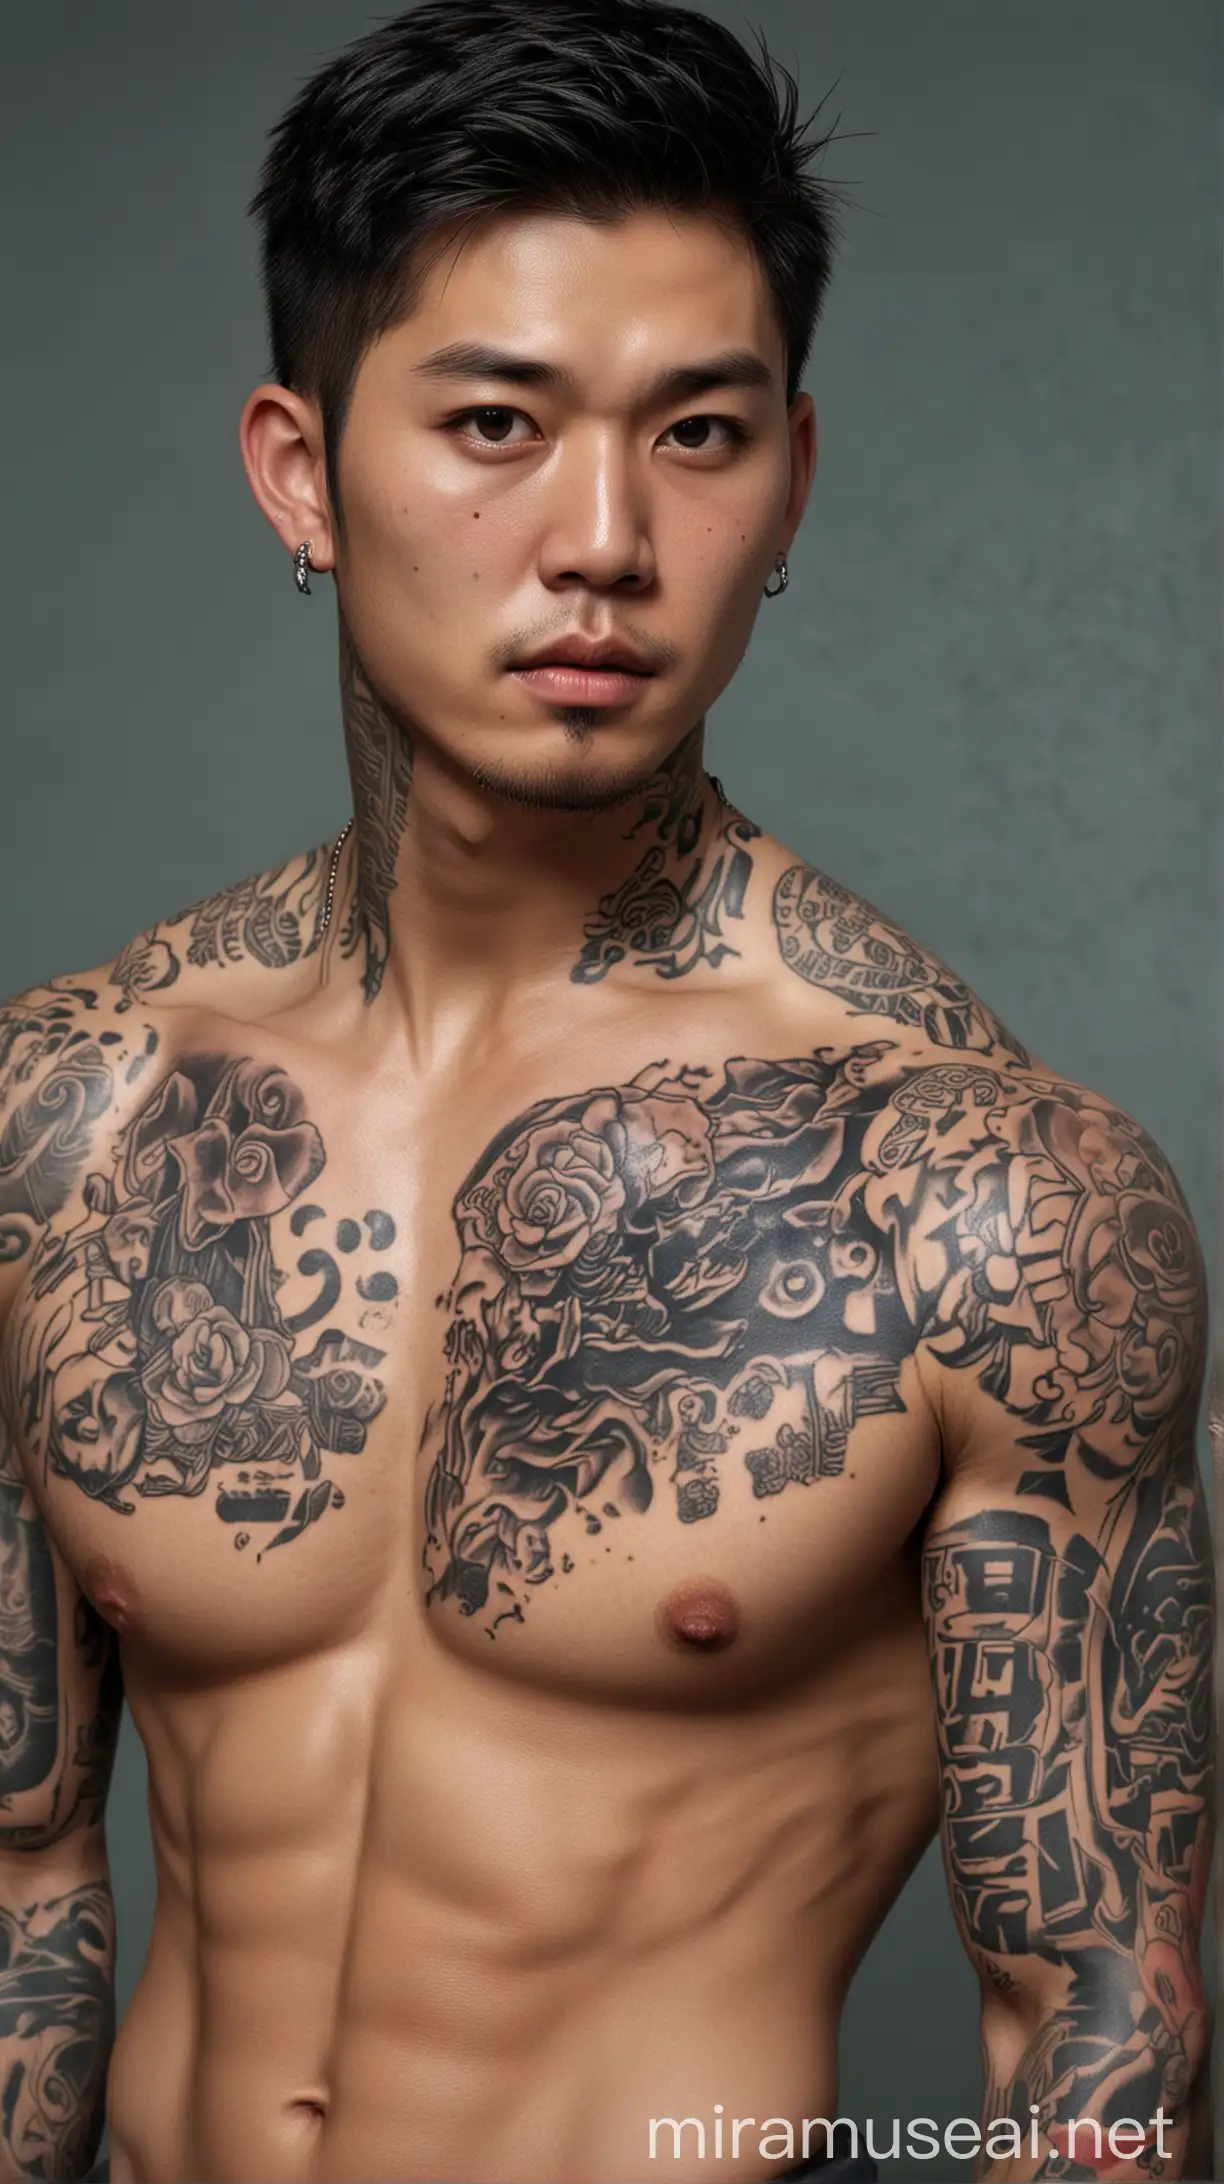 Pria Korea tampan dengan tato seluruh tubuh memegang, airsoftgun gaya artgerm dalam gaya greg rutkowski dan dalam gaya Thomas kinkade wajah detail mata detail latar belakang bermotif definisi tinggi fokus tajam resolusi tinggi --v 66 --gaya mentah - -s 130 --ar 35:64